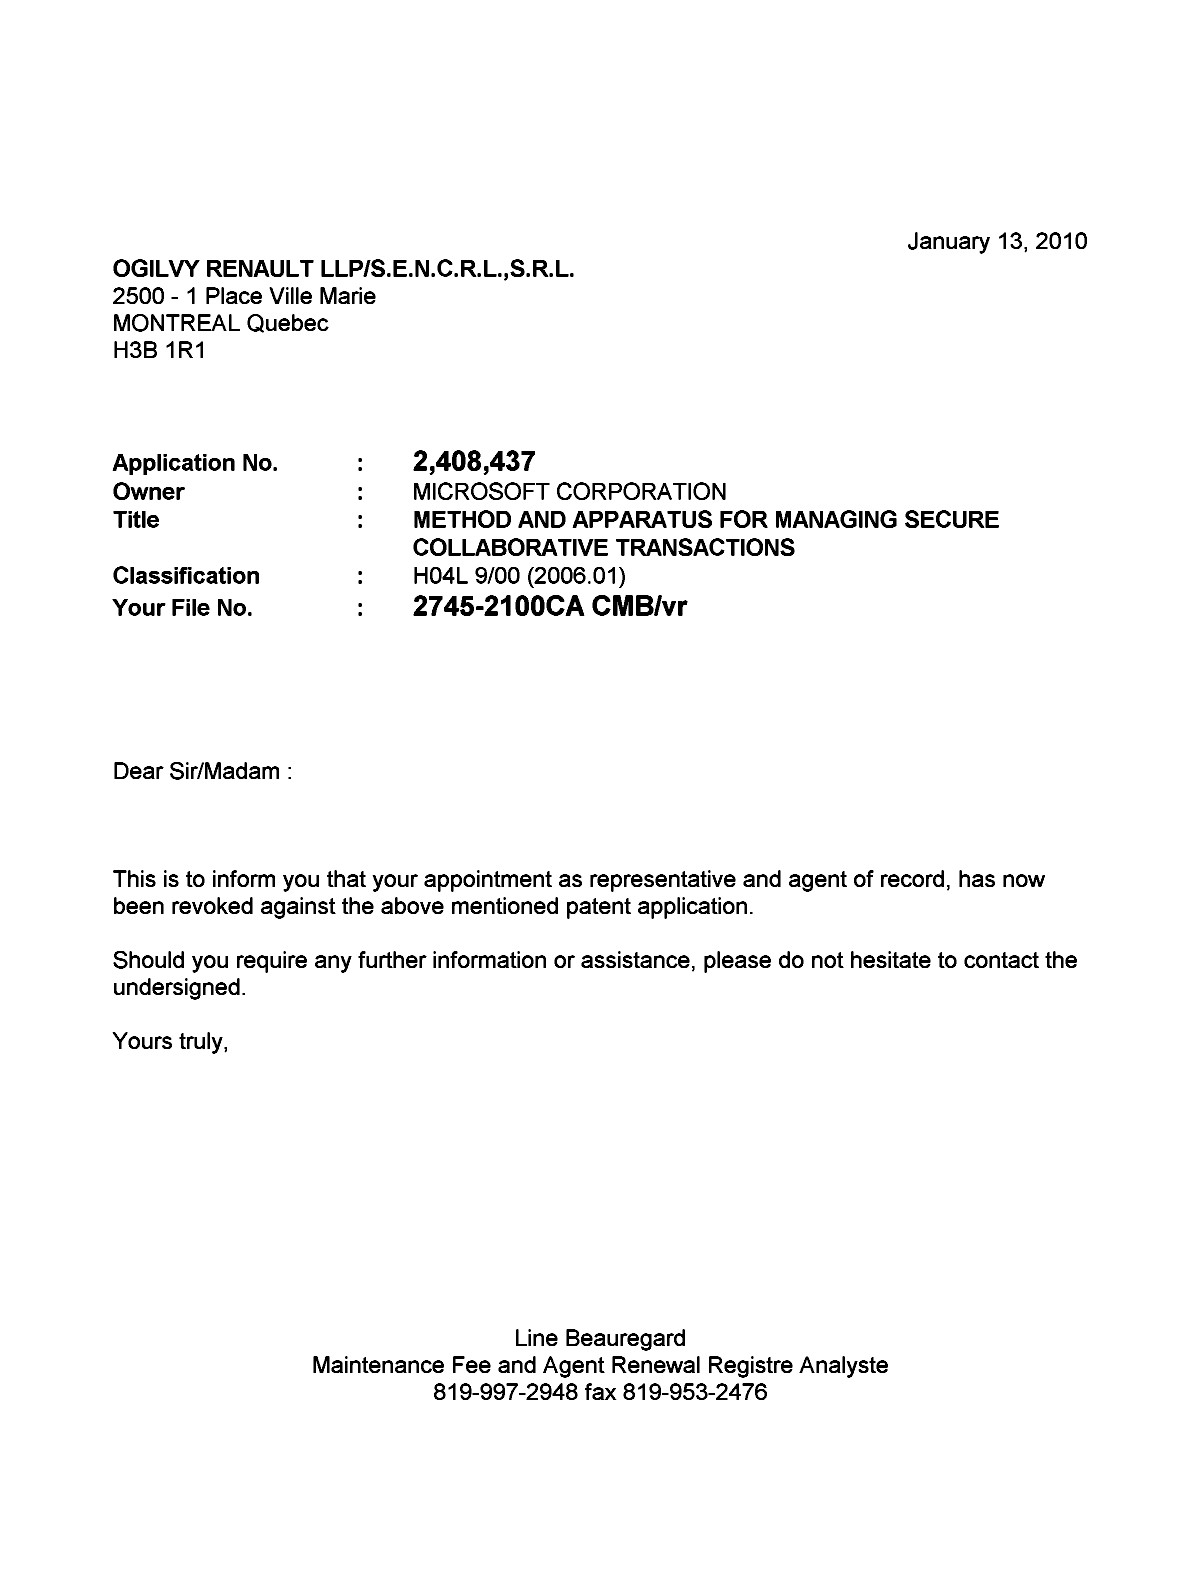 Document de brevet canadien 2408437. Correspondance 20100113. Image 1 de 1